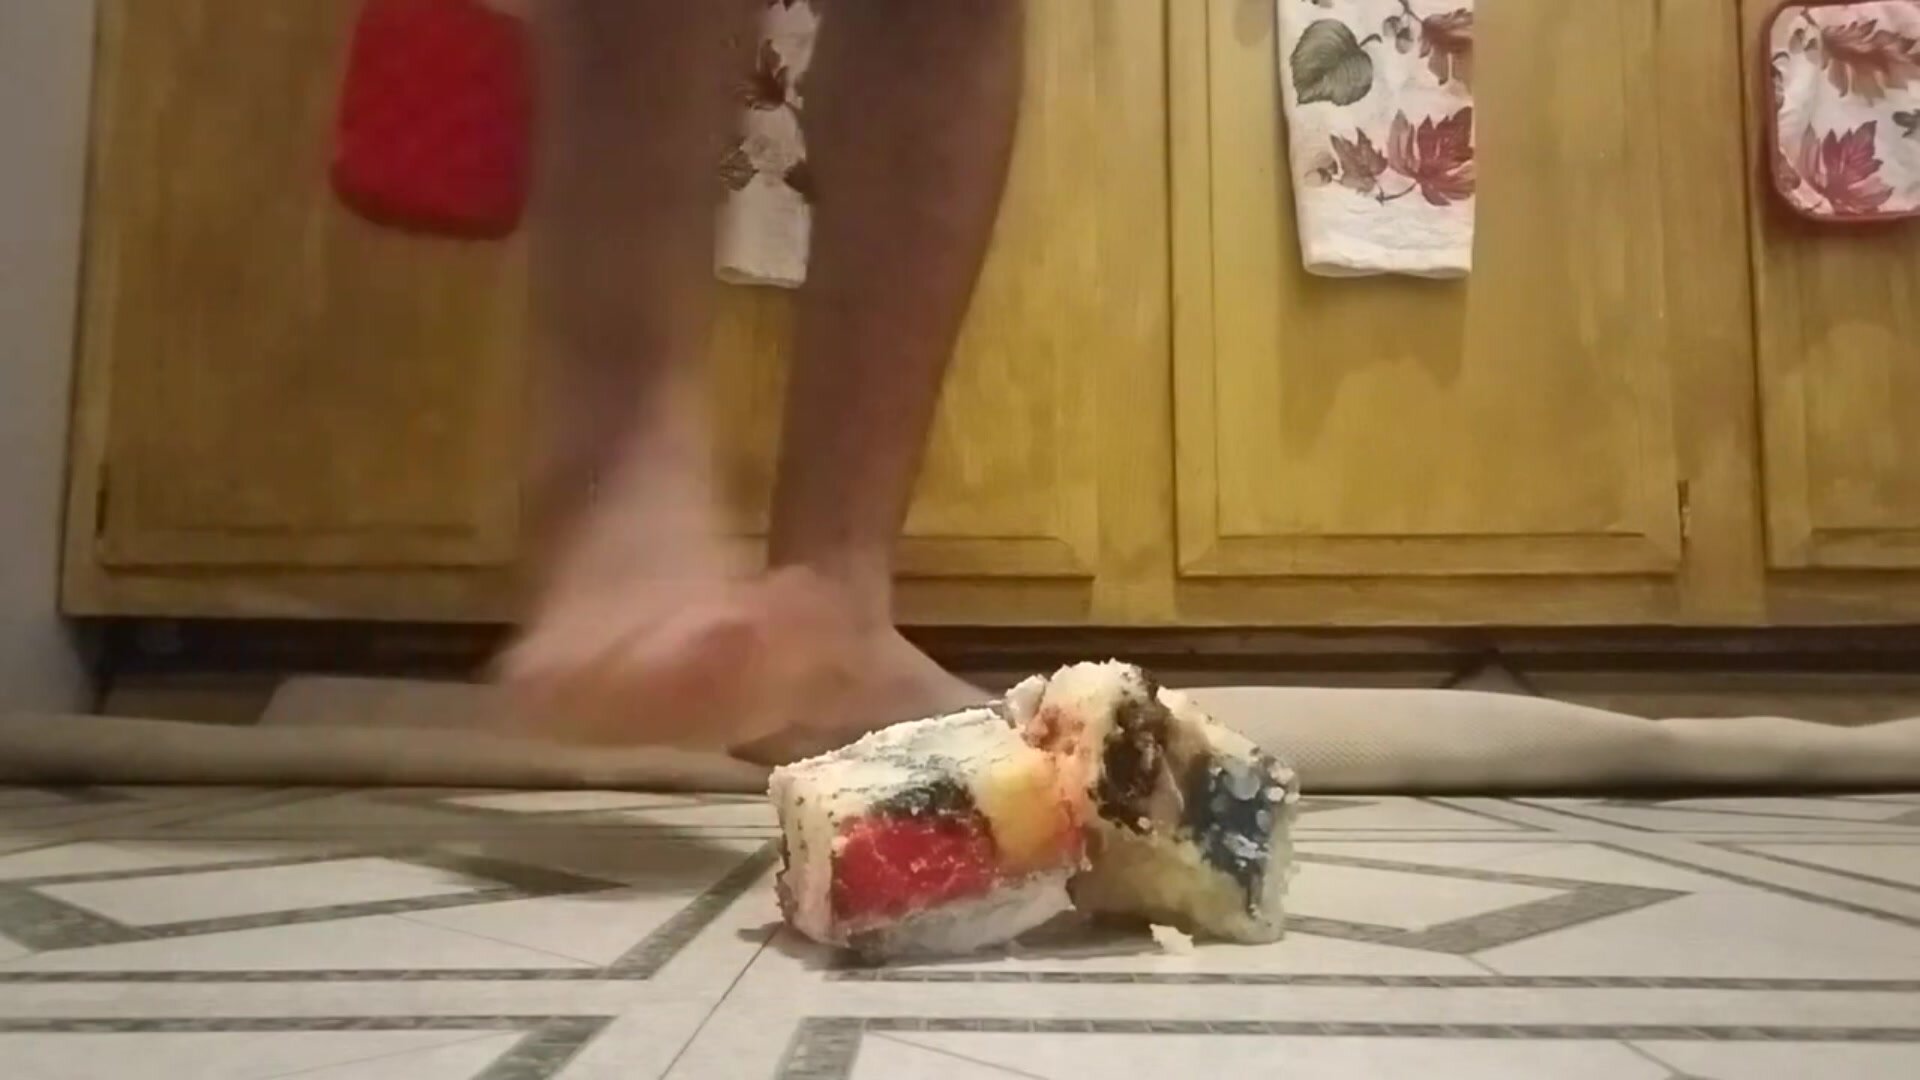 Male Feet Stomp Cake